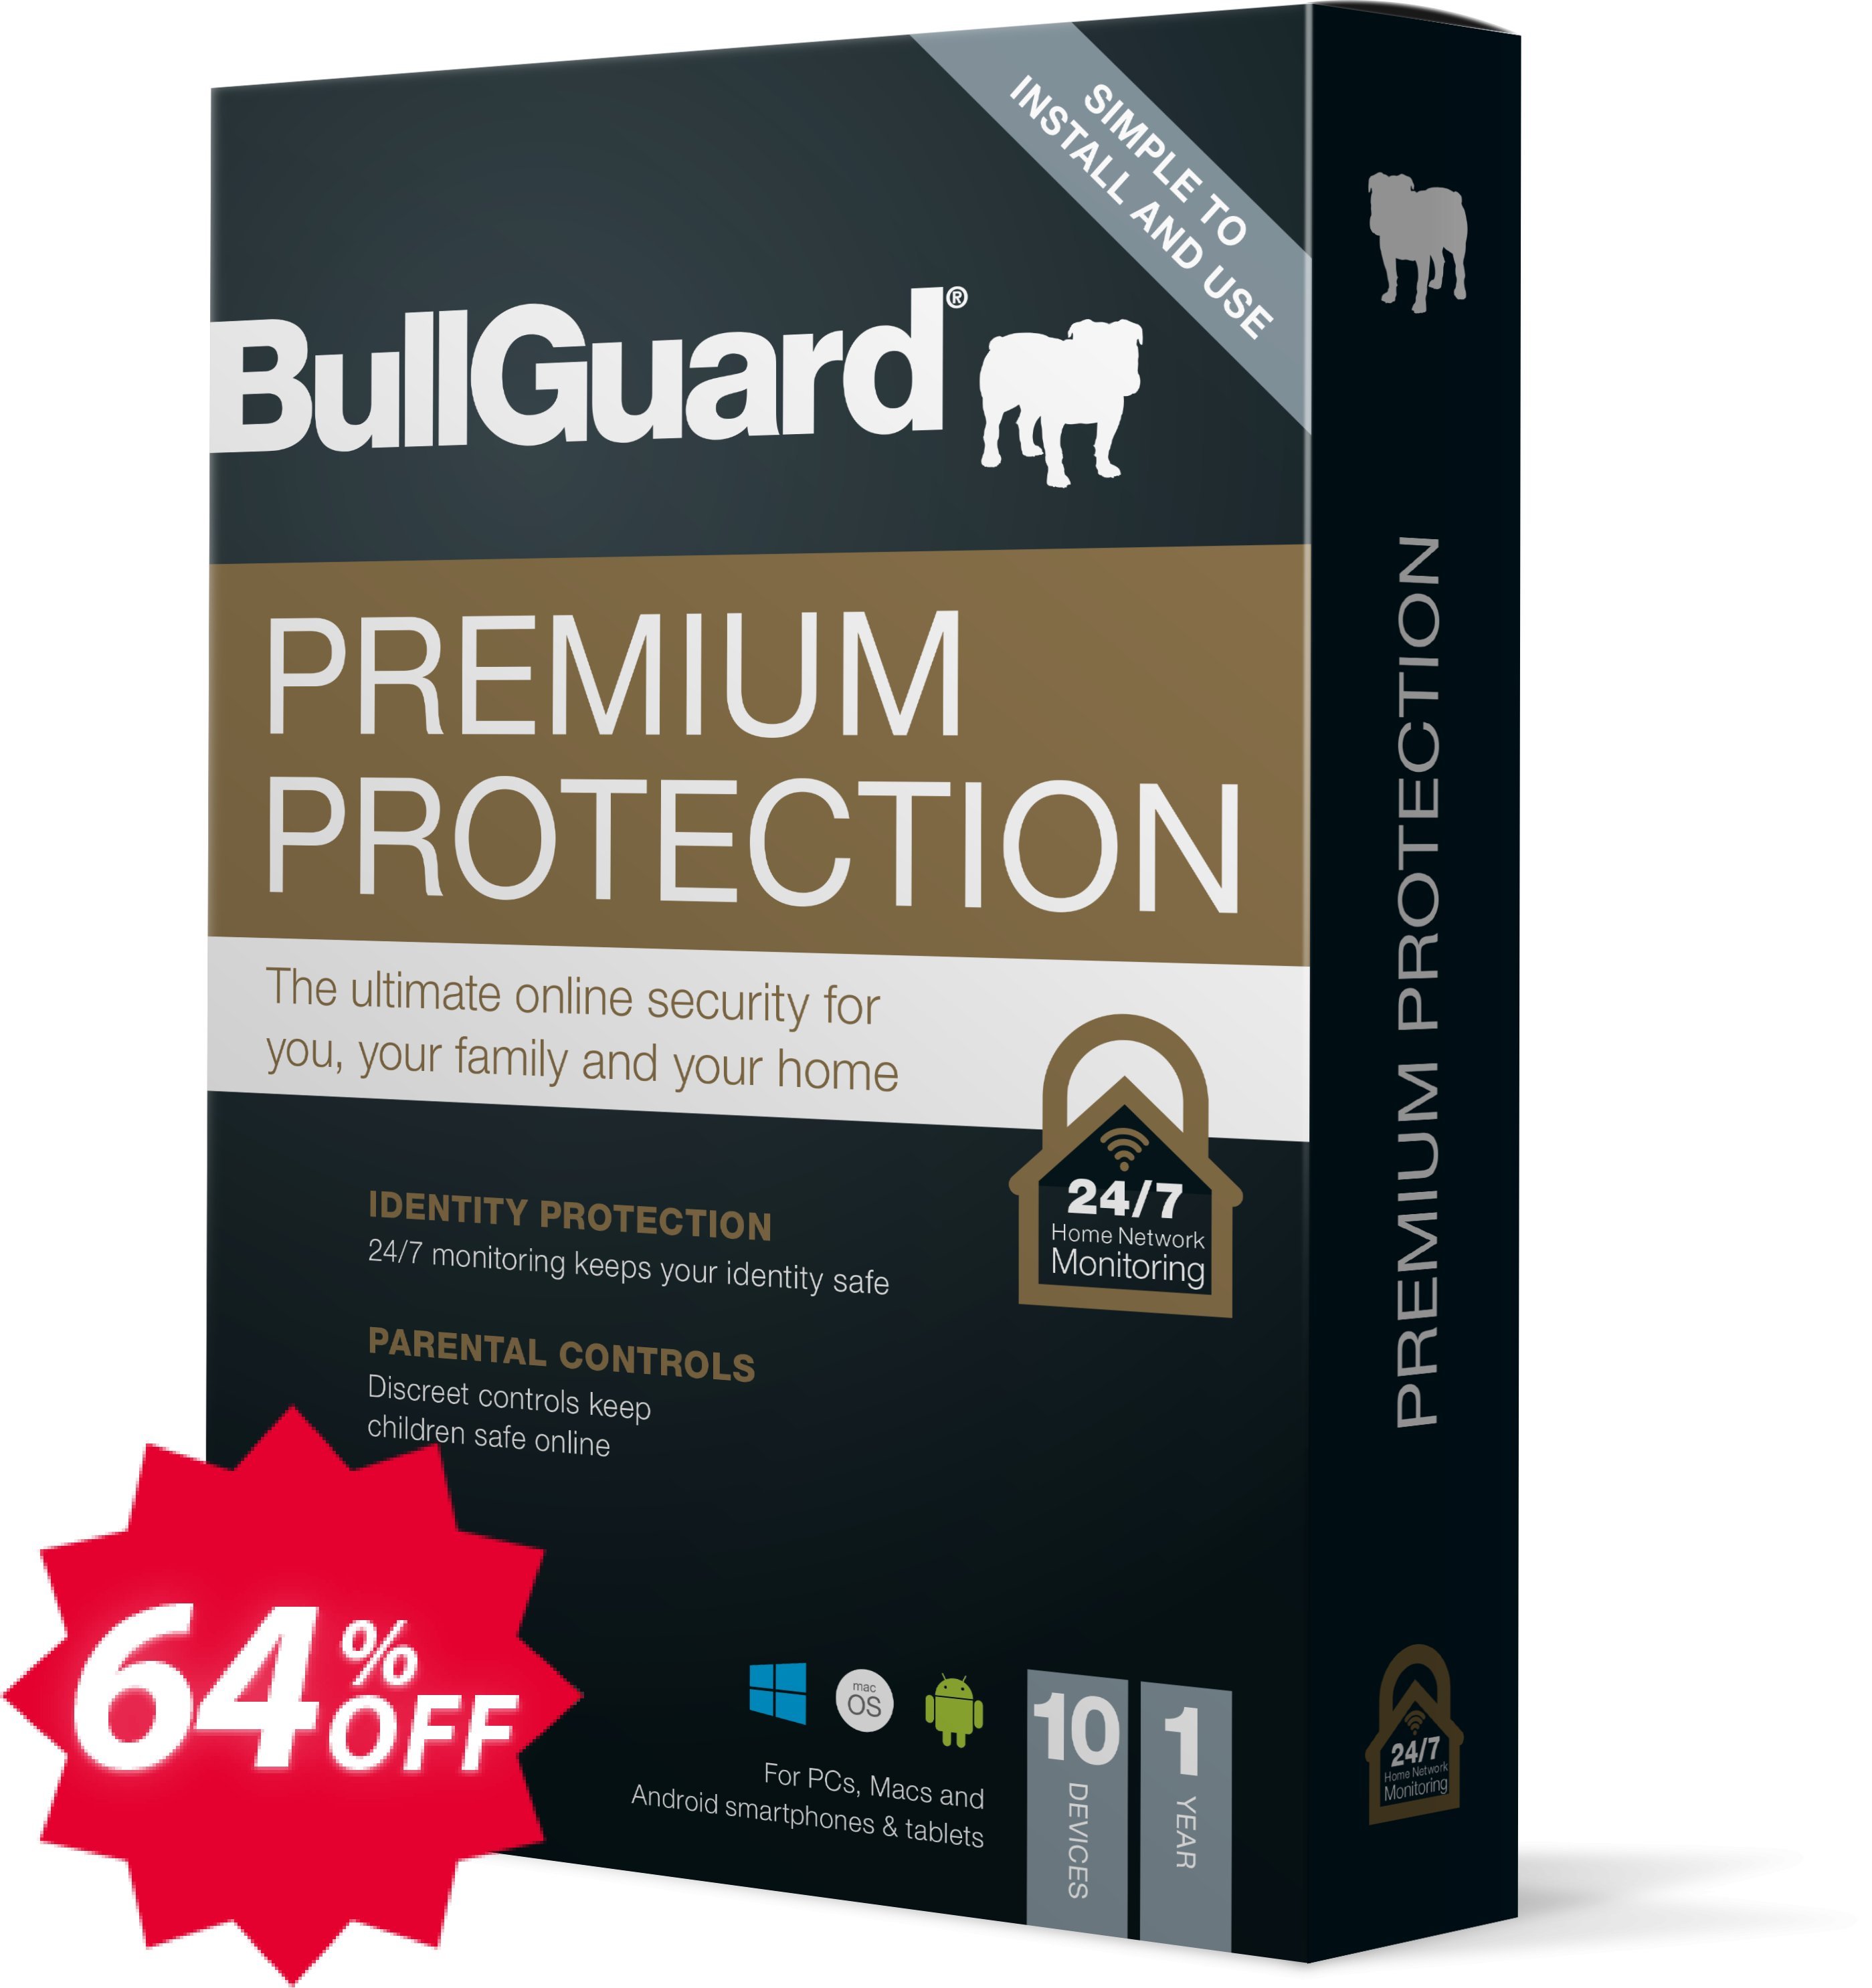 BullGuard Premium Protection 2021 Coupon code 64% discount 